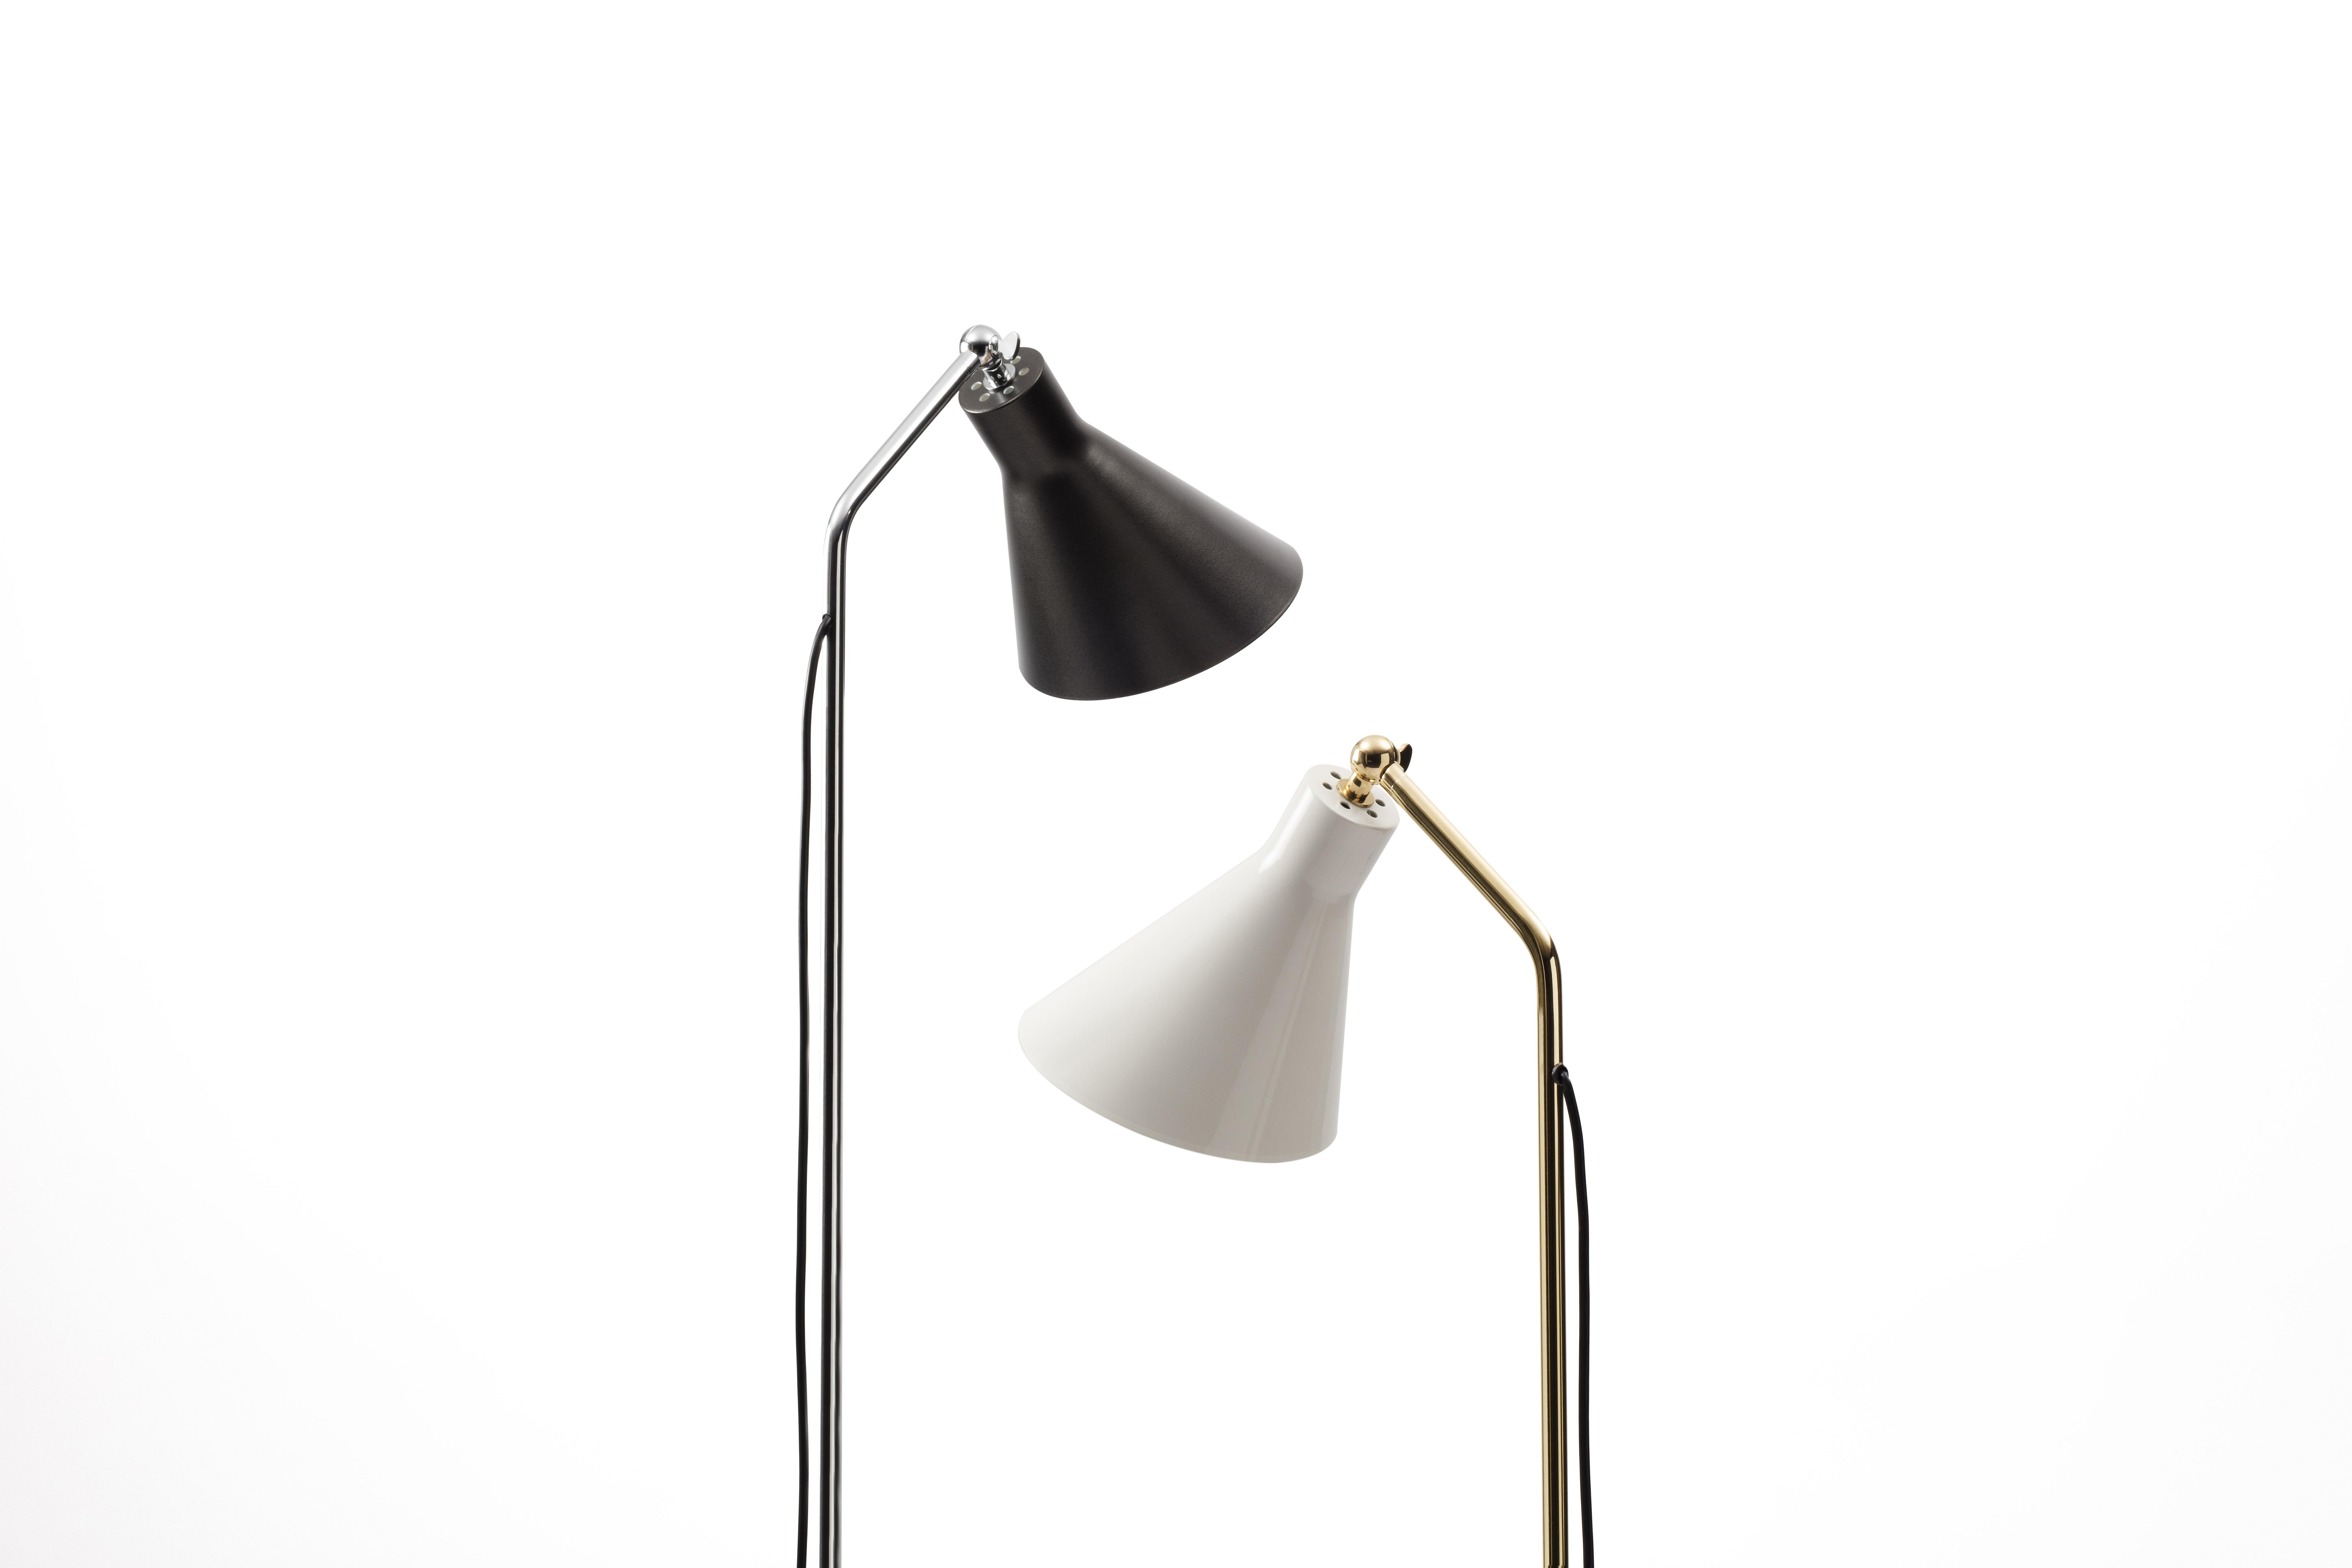 Ignazio Gardella Alzabile Floor Lamp in Brass, Metal and Marble for Tato Italia In New Condition For Sale In Glendale, CA